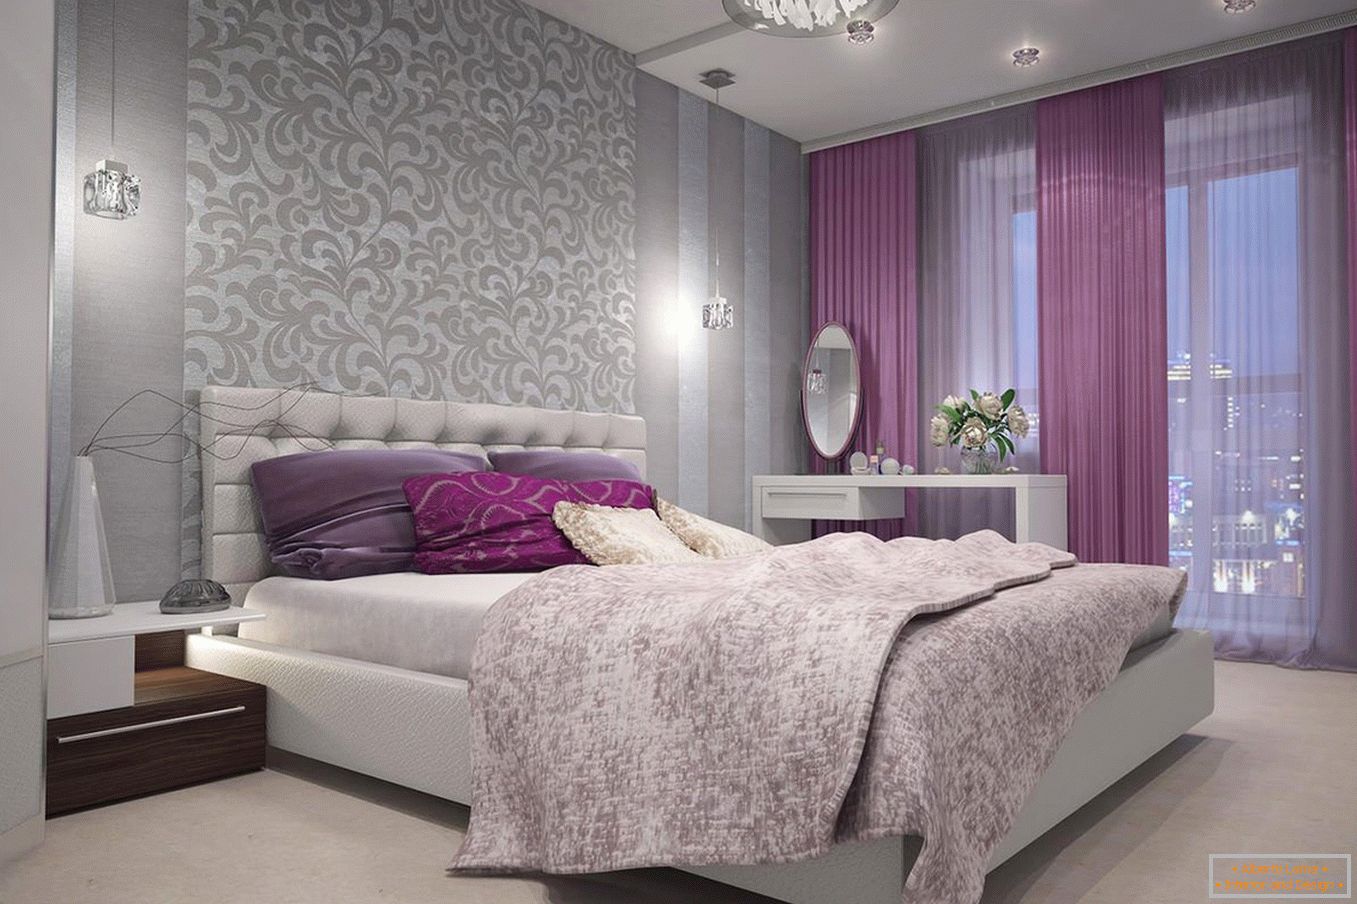 Rideaux violettes dans la chambre